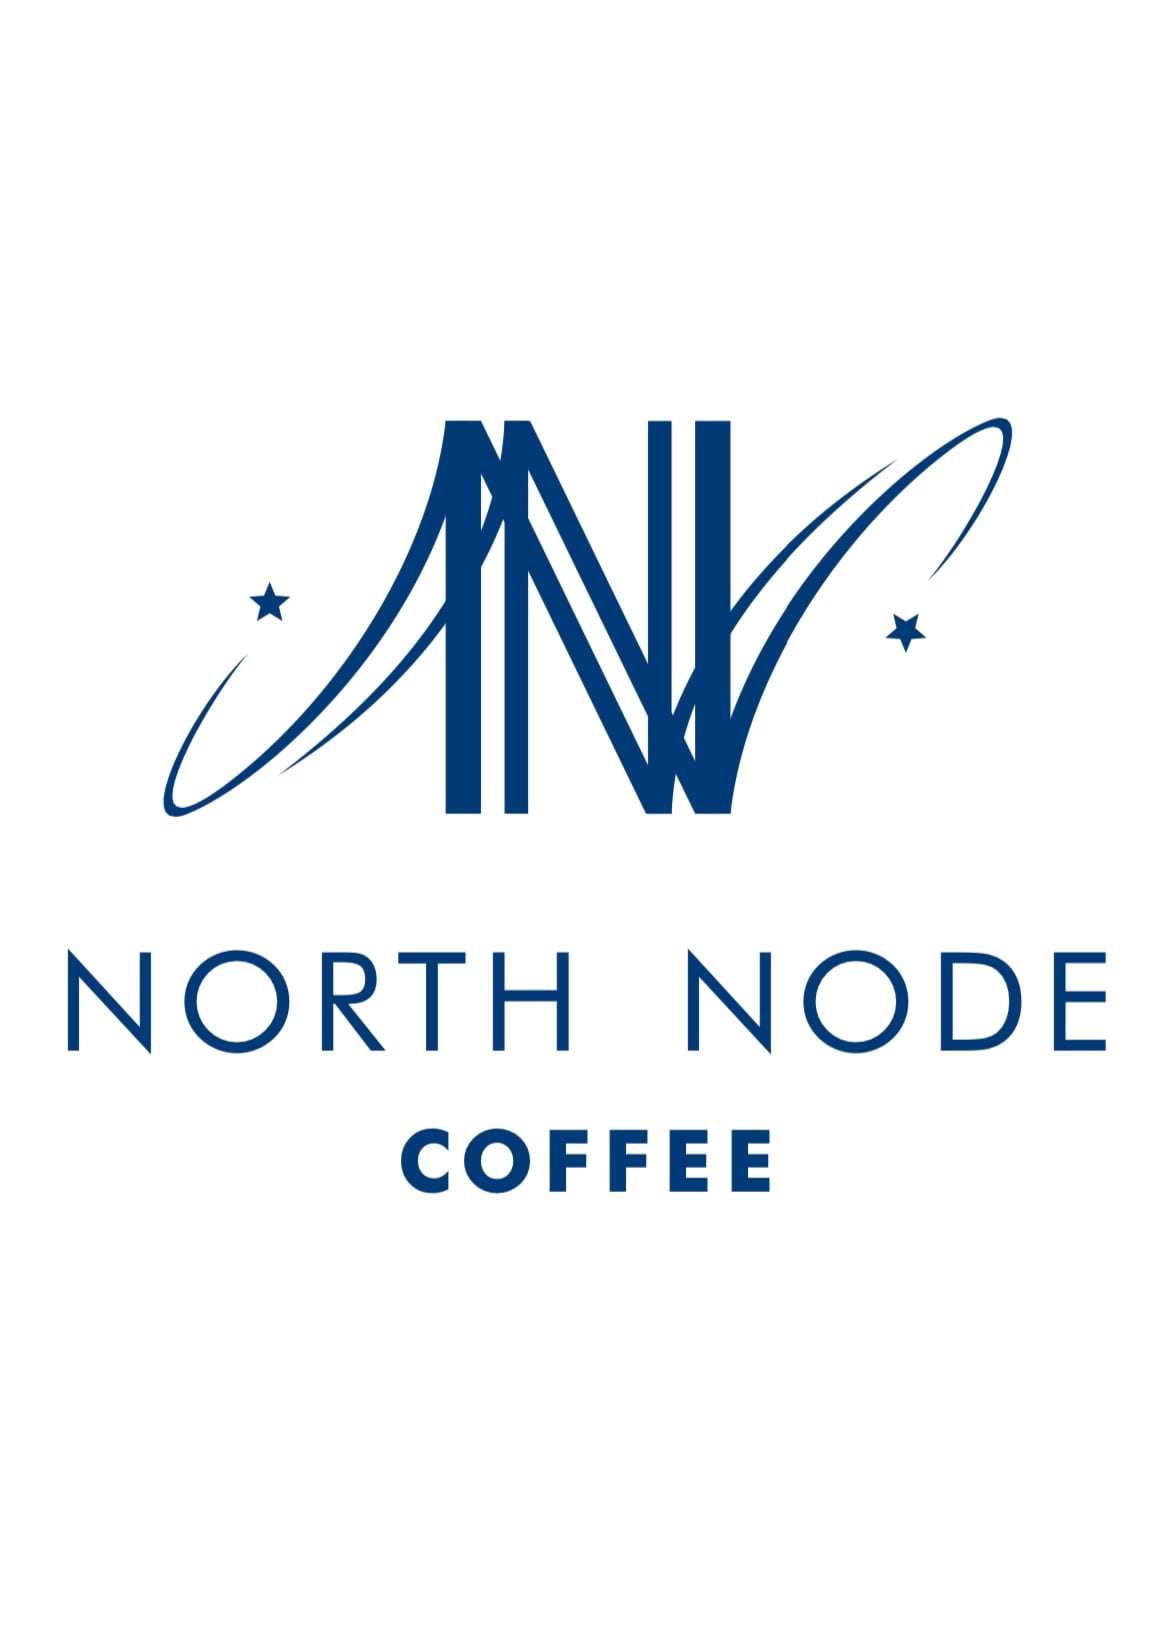 northnodecoffee